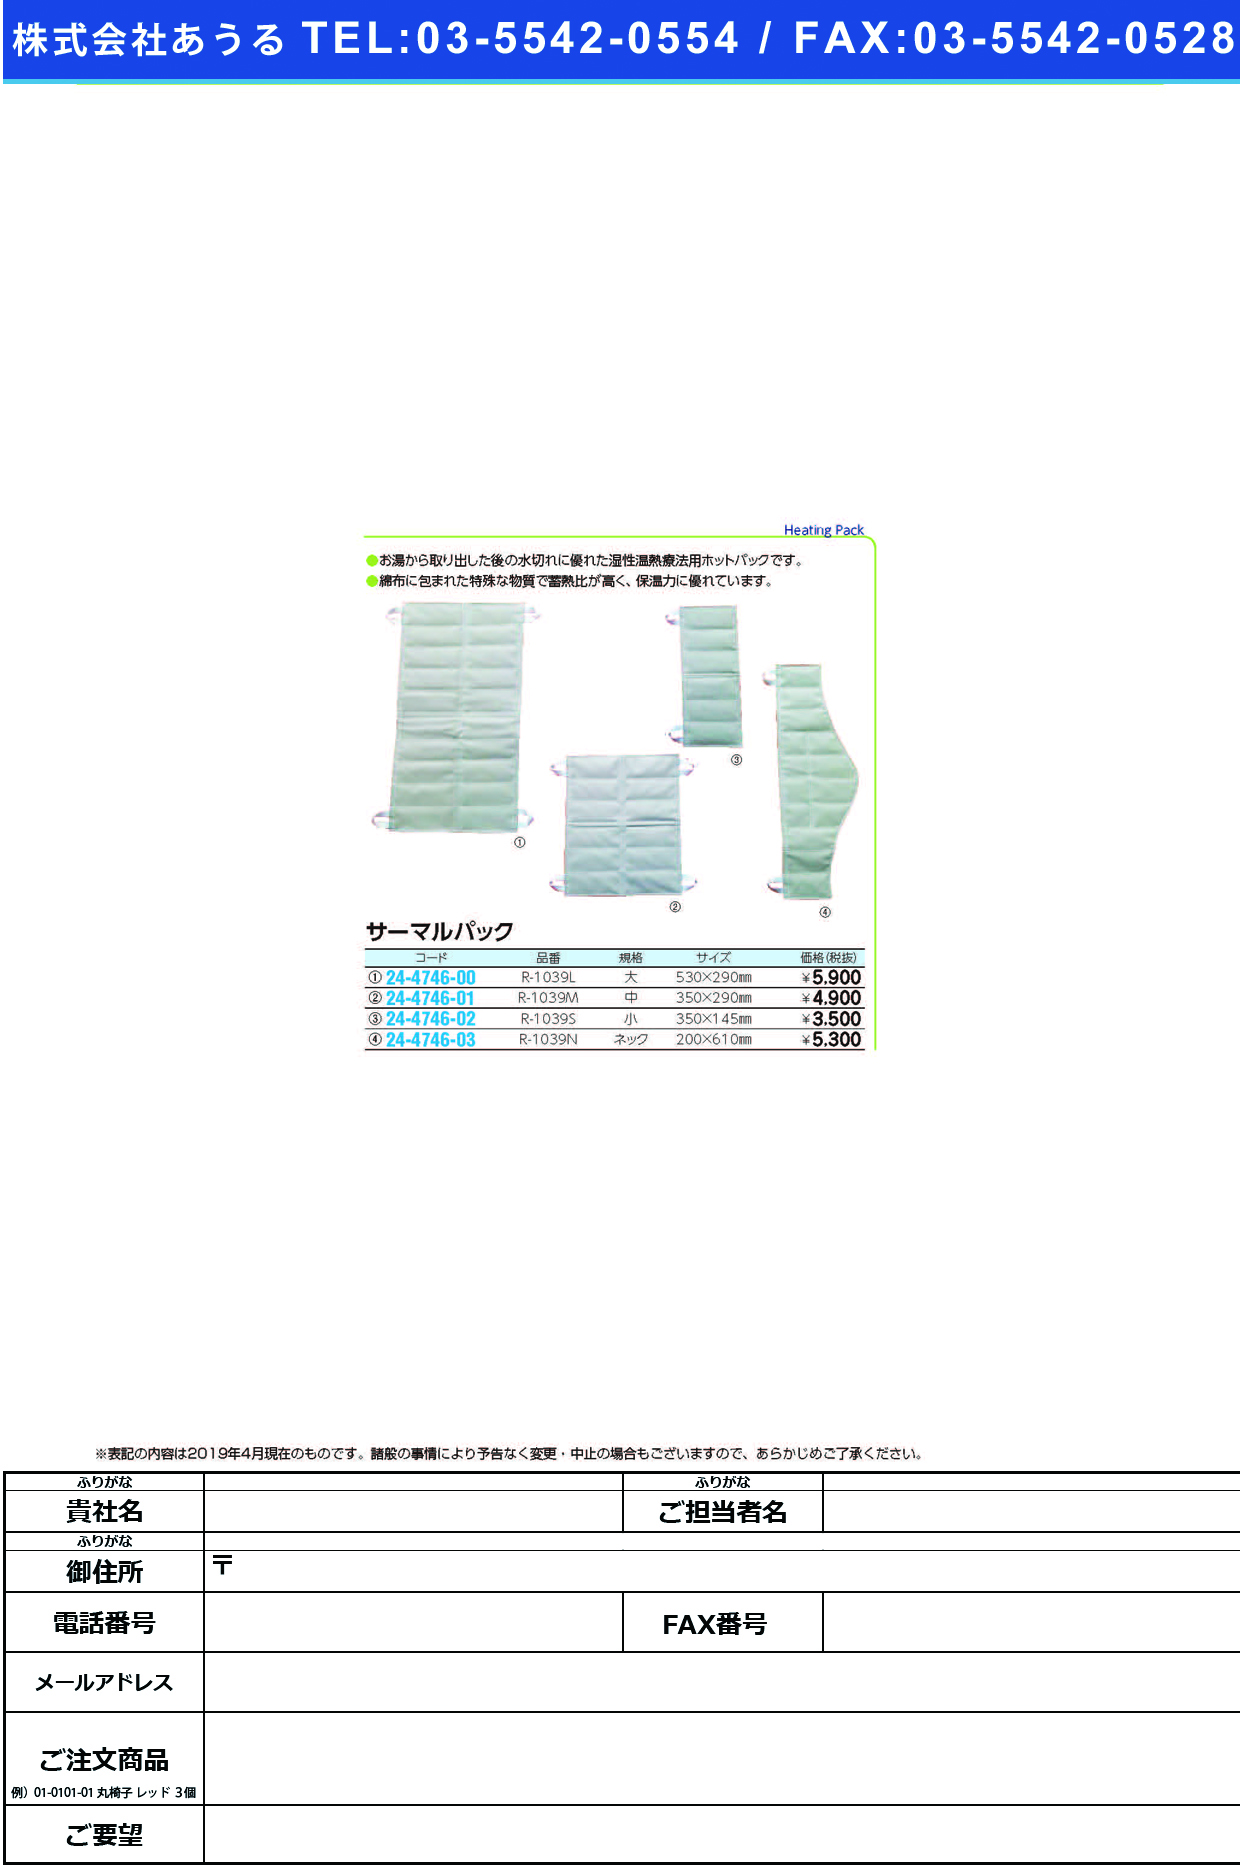 (24-4746-03)サーマルパック（ネック） R-1039N ｻｰﾏﾙﾊﾟｯｸ【1枚単位】【2019年カタログ商品】